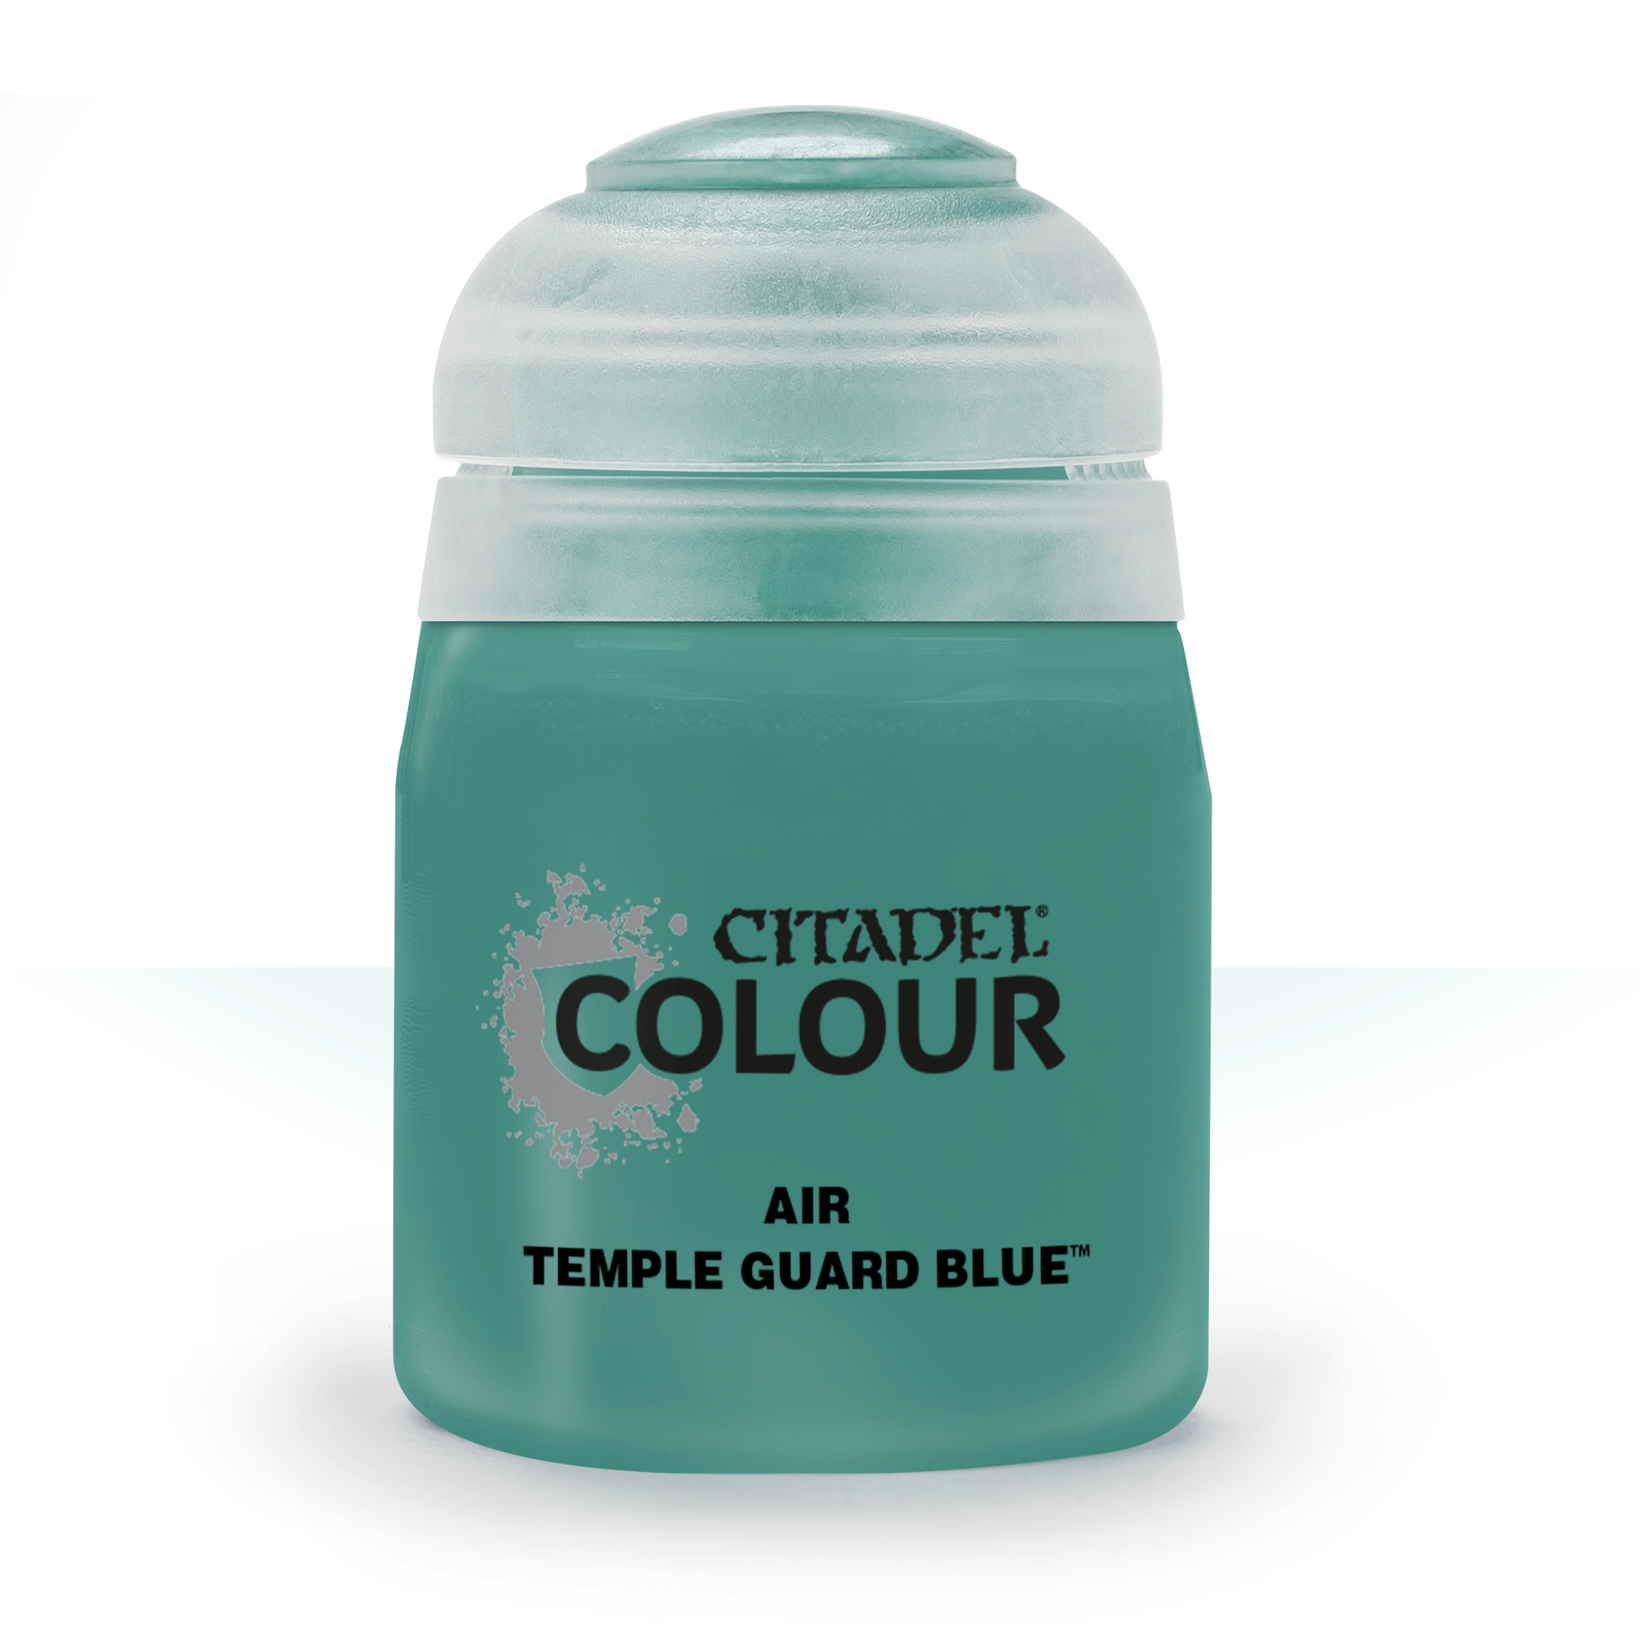 Citadel Temple Guard Blue (Air 24ml)